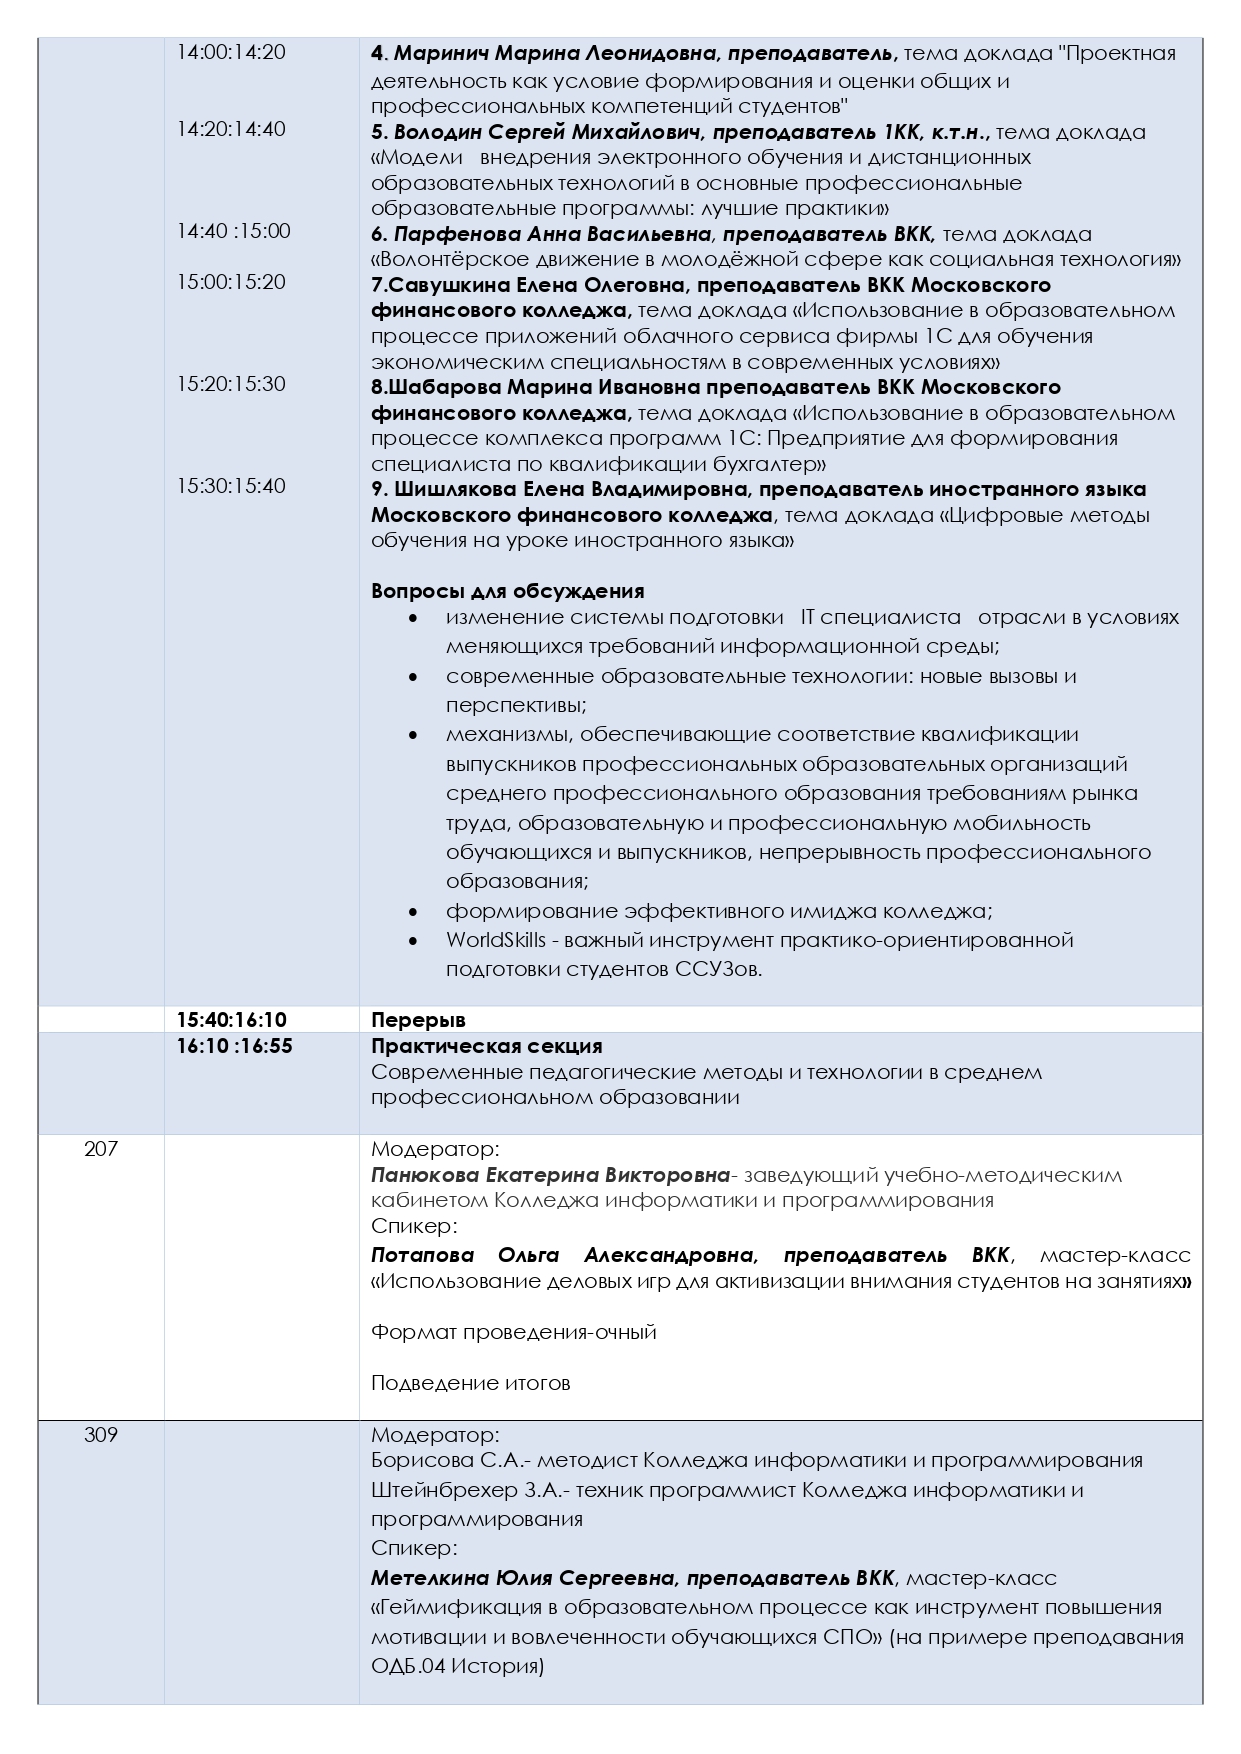 Программа конференции20.05.2021 (002)_page-0003.jpg